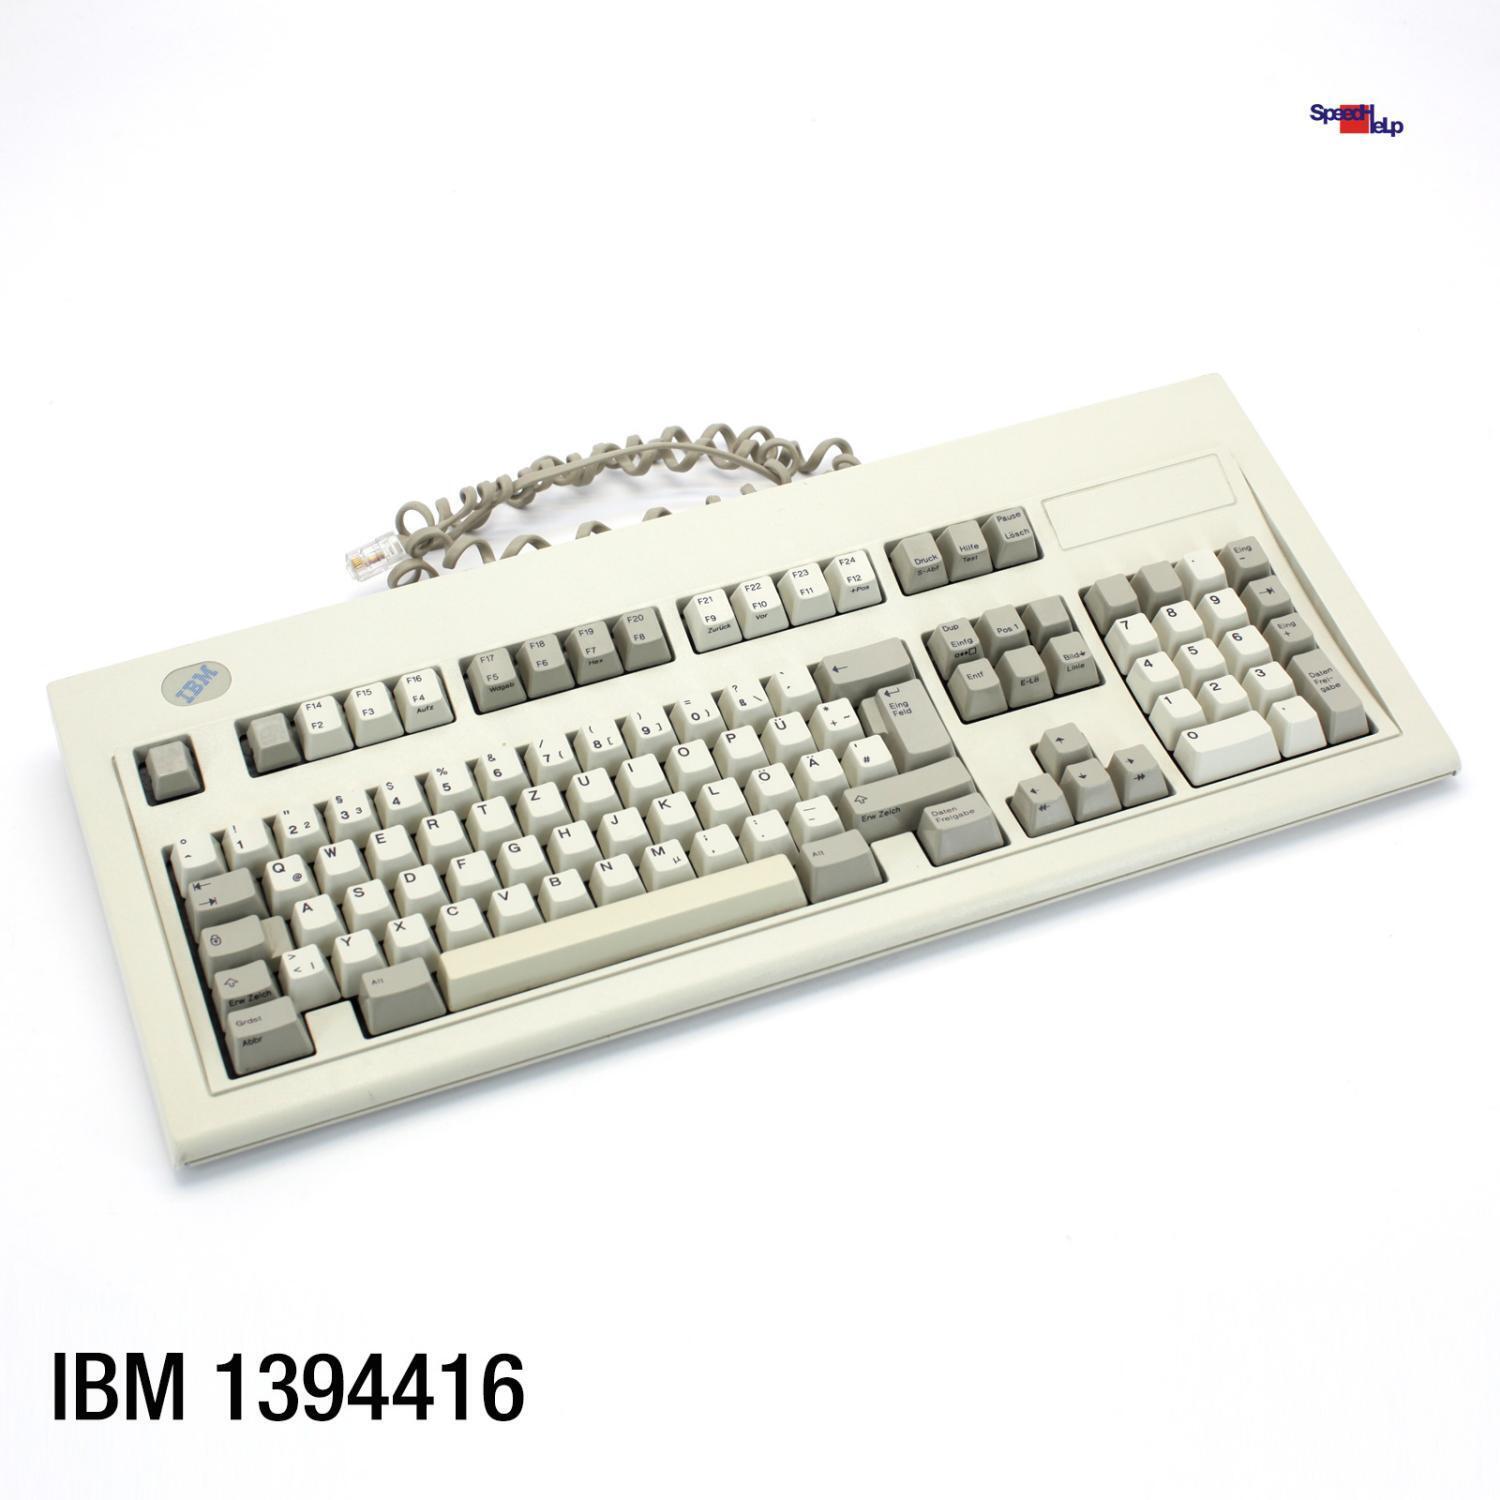 IBM 1394416 Vintage Keyboard Computer Keyboard Qwertz German Retro Old 1994